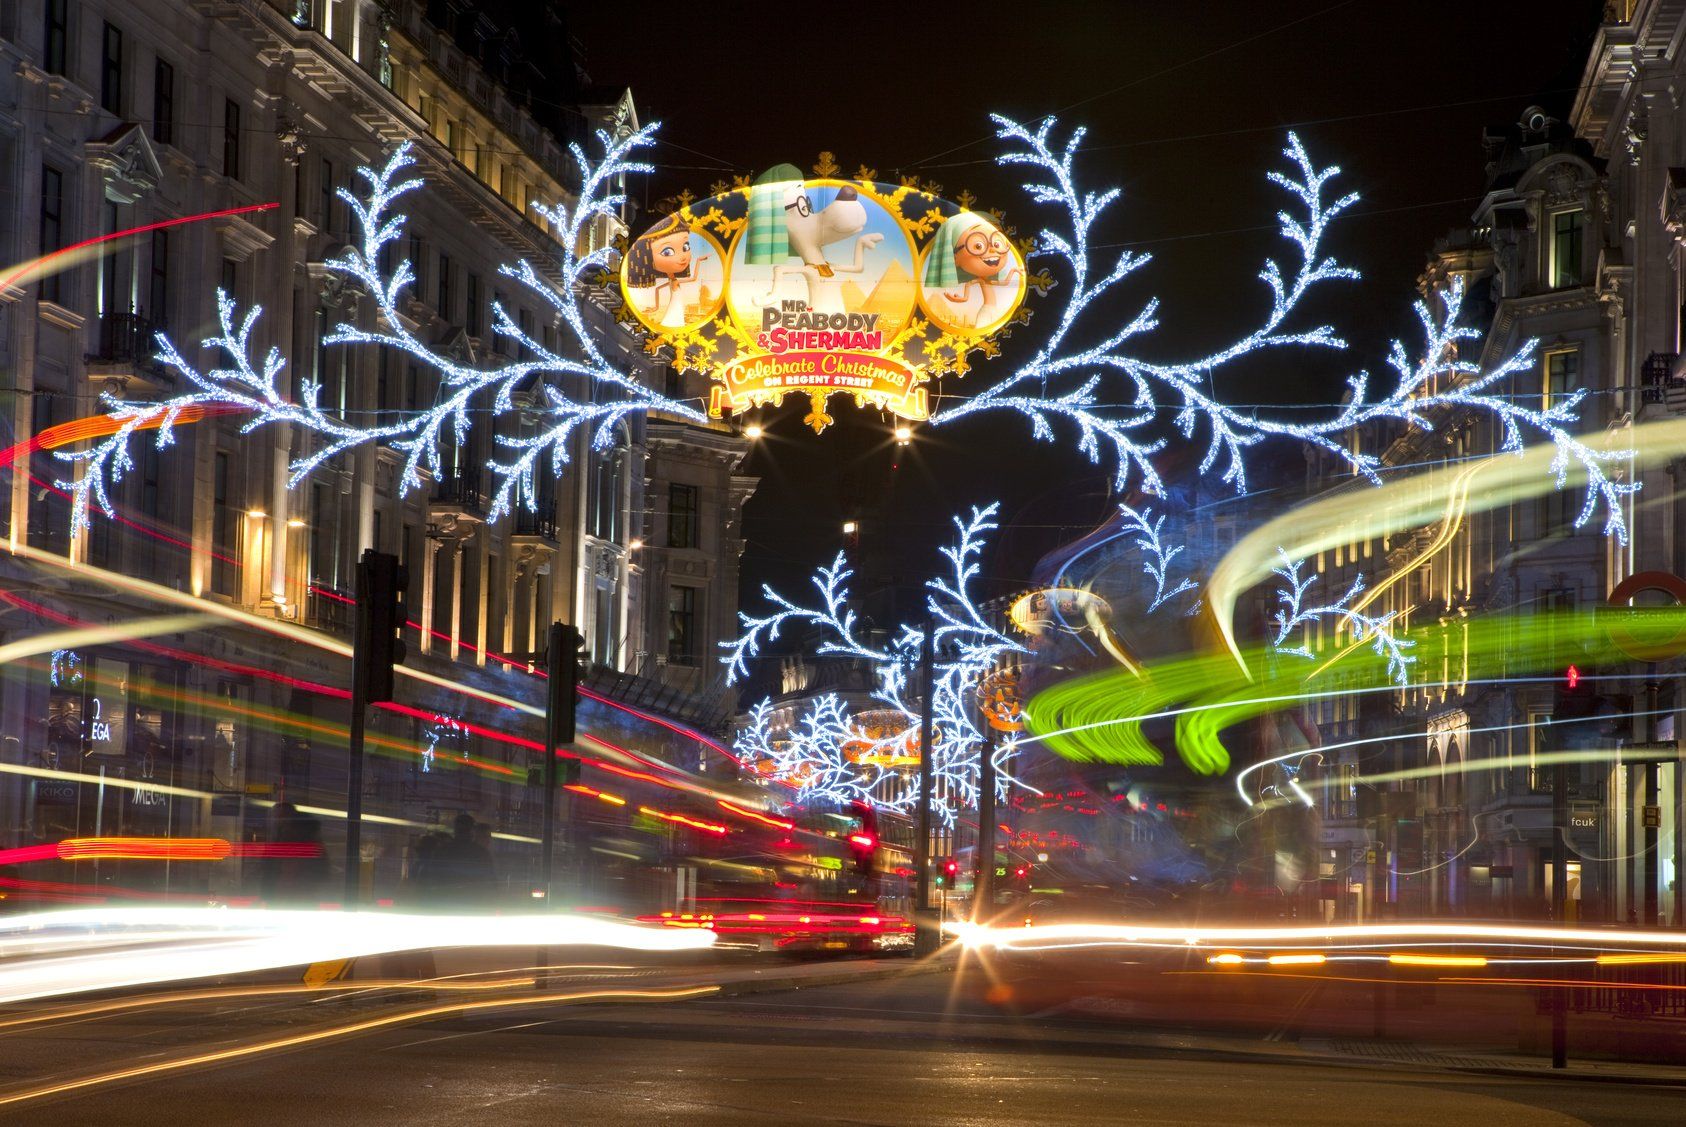 LONDON, UK - DEC 1ST 2013: The Christmas lights on Regent Street in London on 1st December 2013.